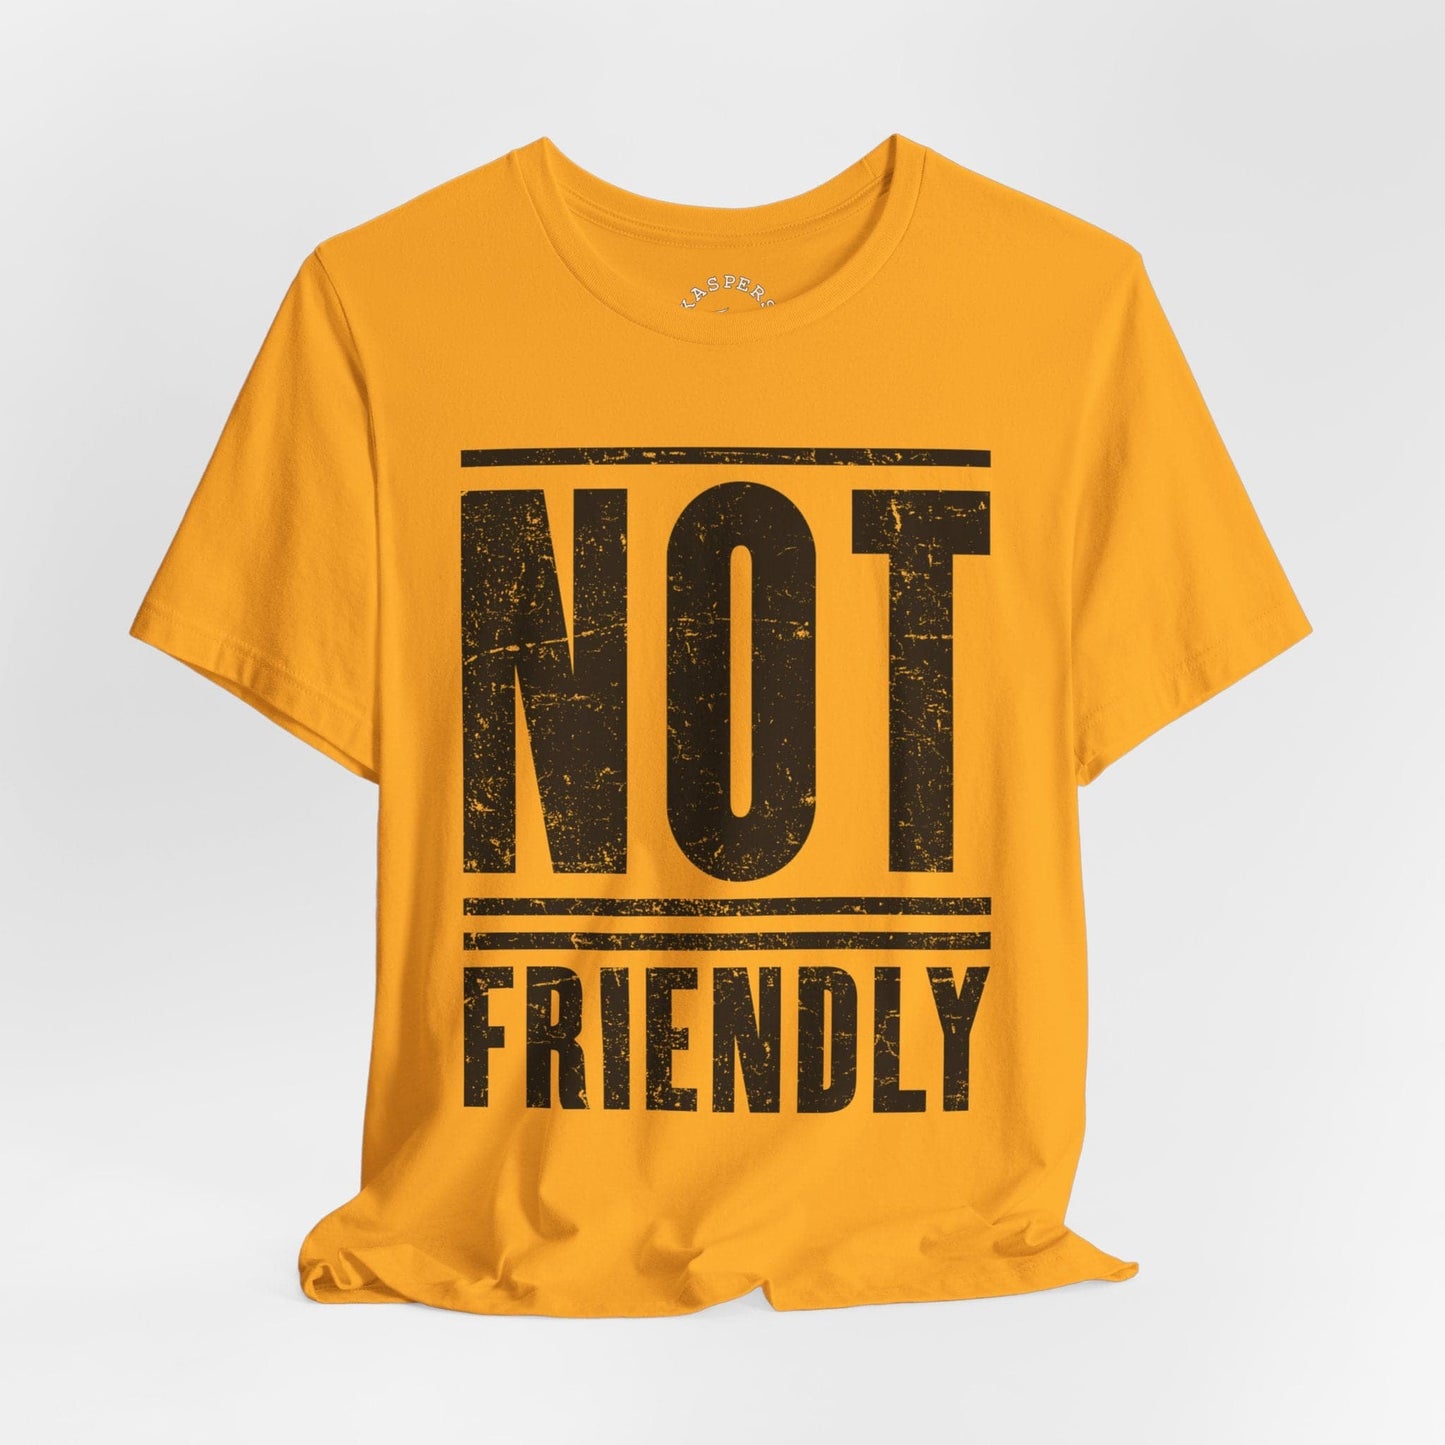 Not Friendly T-Shirt